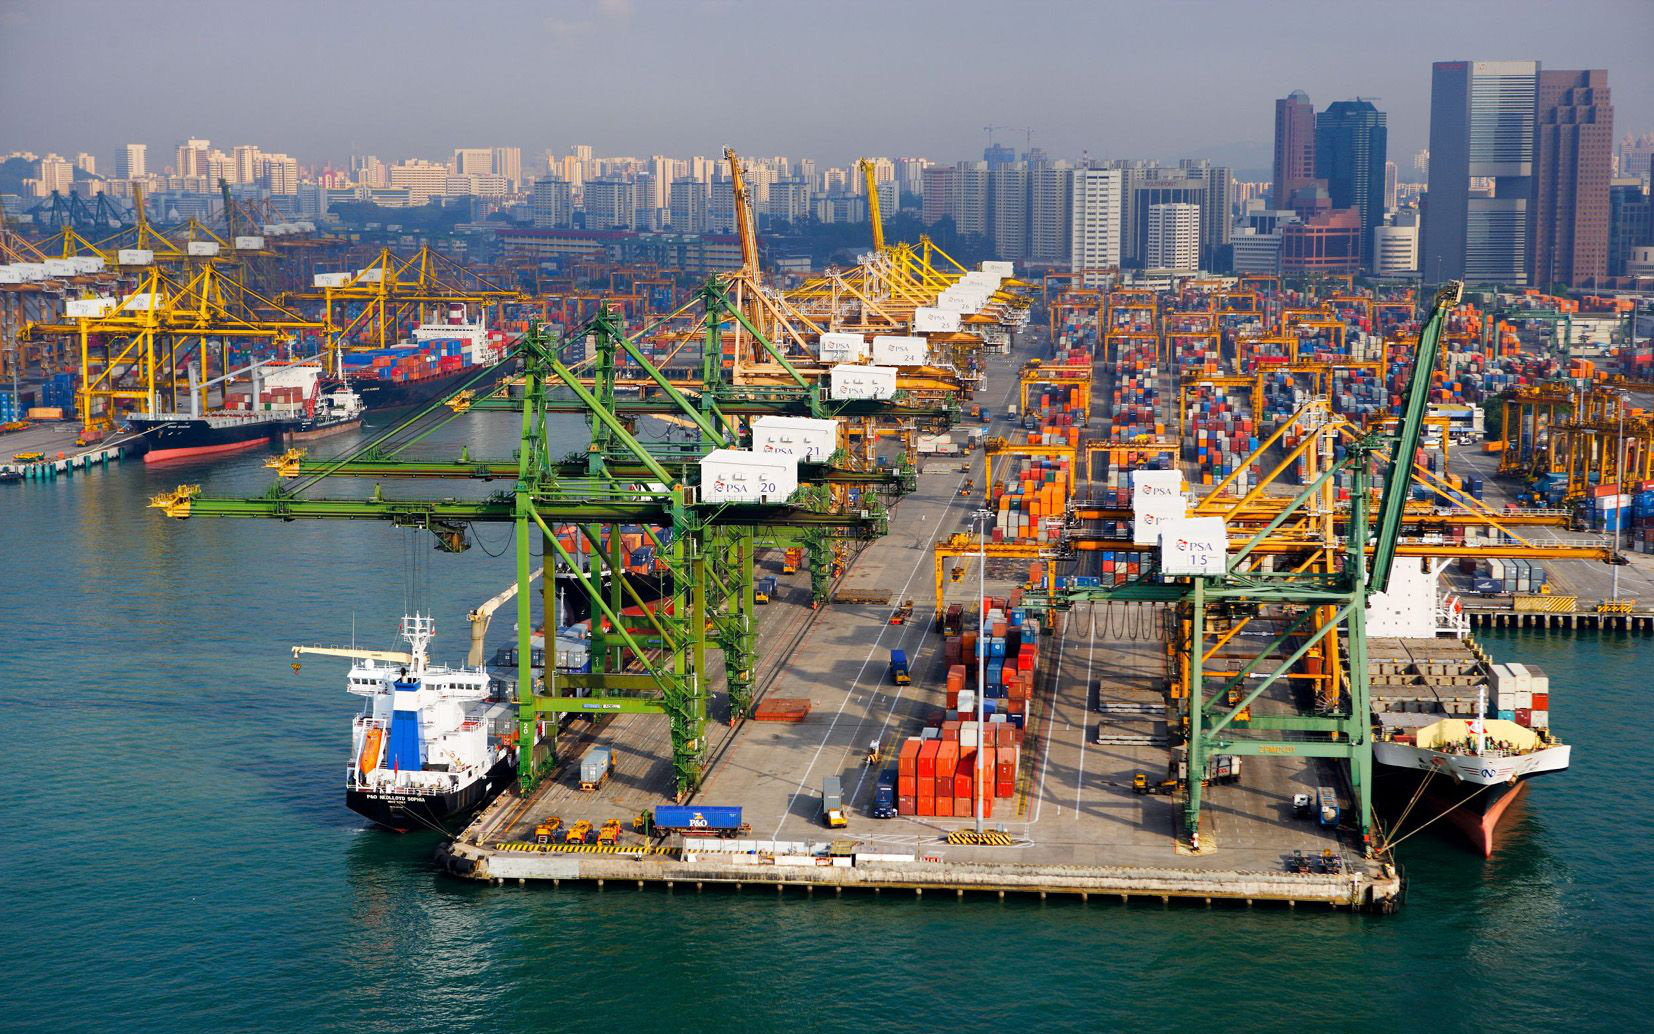 Siêu công nghệ trong ngành vận chuyển hàng hải Singapore